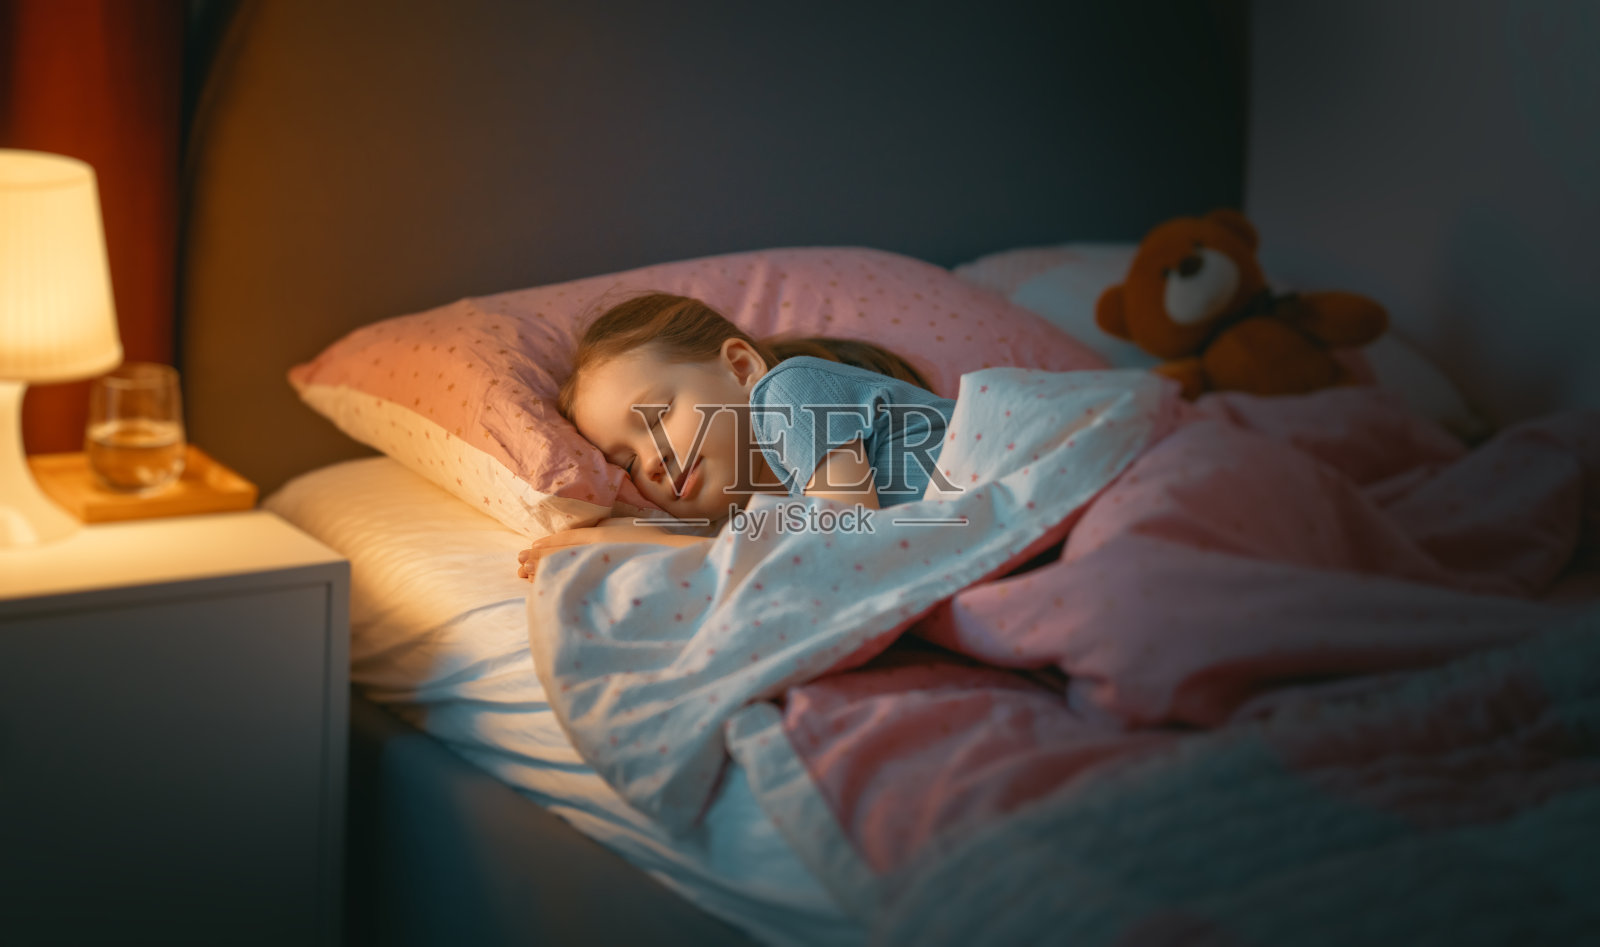 睡眠 婴儿 男孩 新生 肖像 和平图片下载 - 觅知网